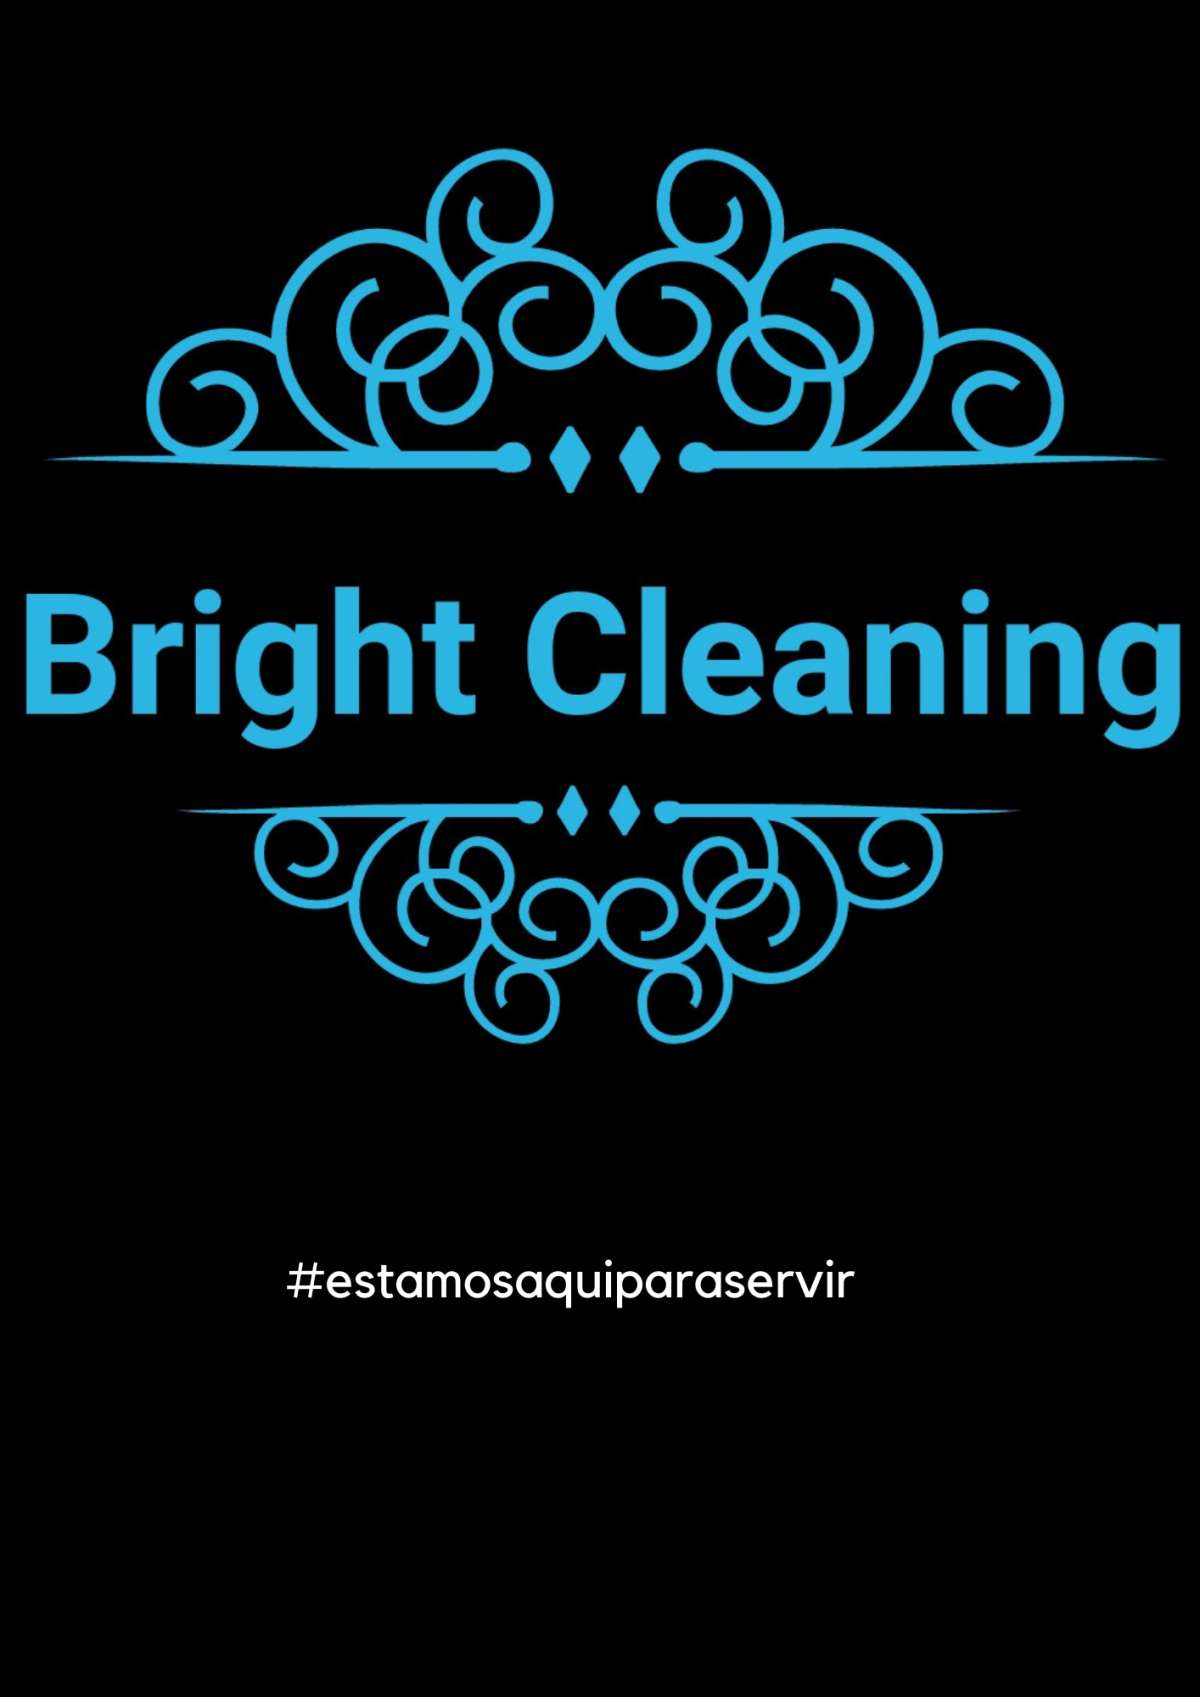 Bright Cleaning - Moita - Limpeza de Persianas